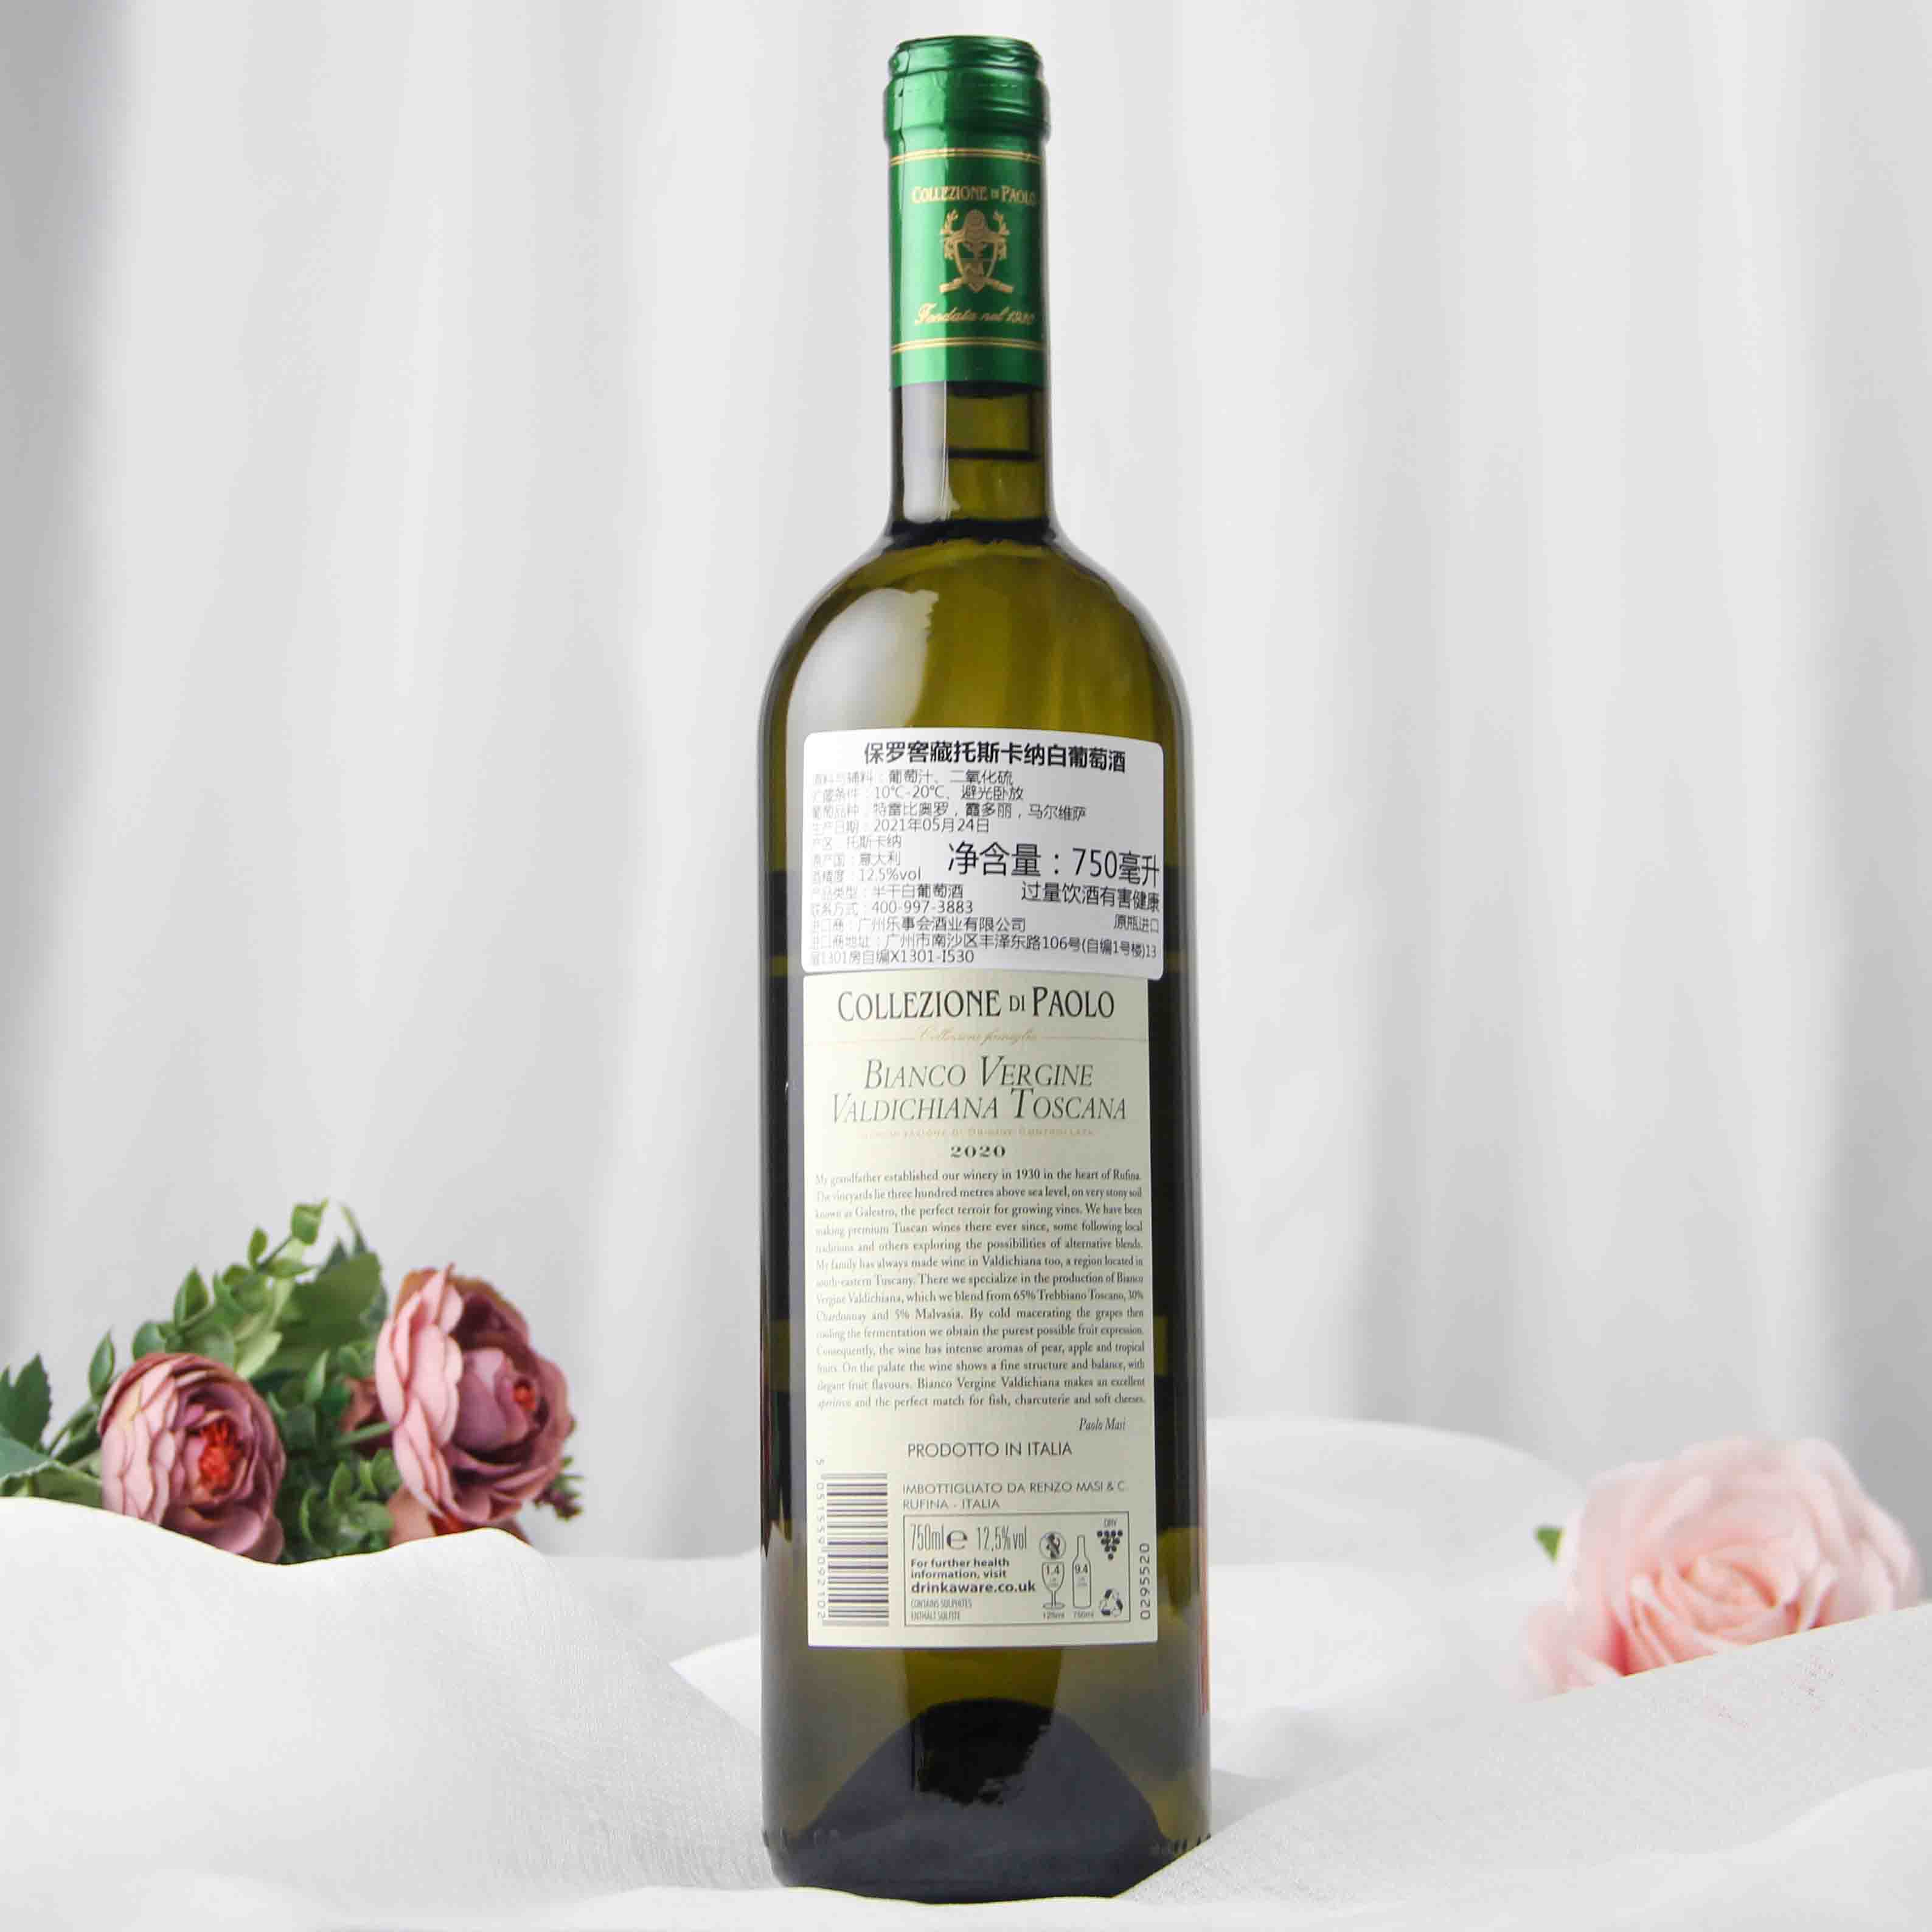 意大利保罗窖藏托斯卡纳白葡萄酒2020